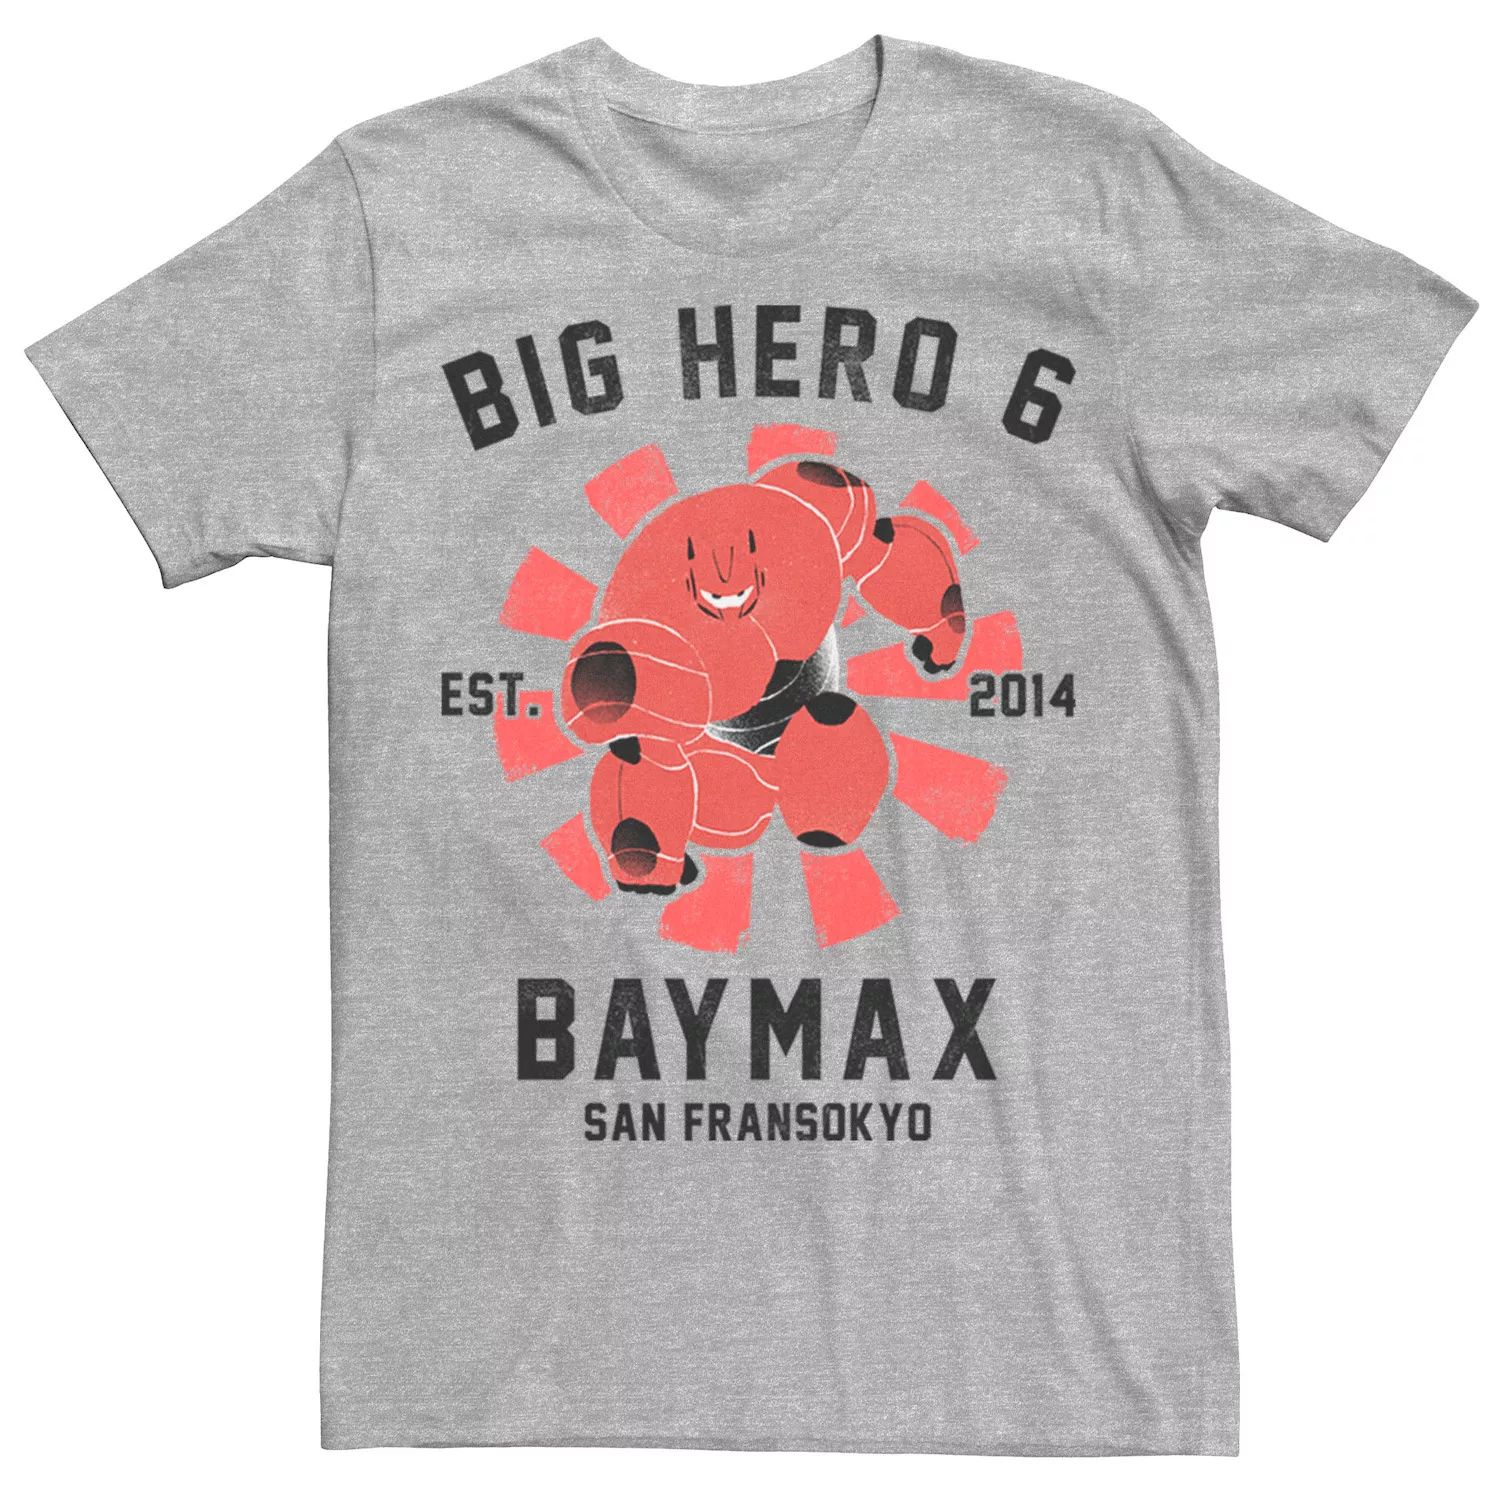 Мужская футболка с плакатом Big Hero 6 Baymax Disney